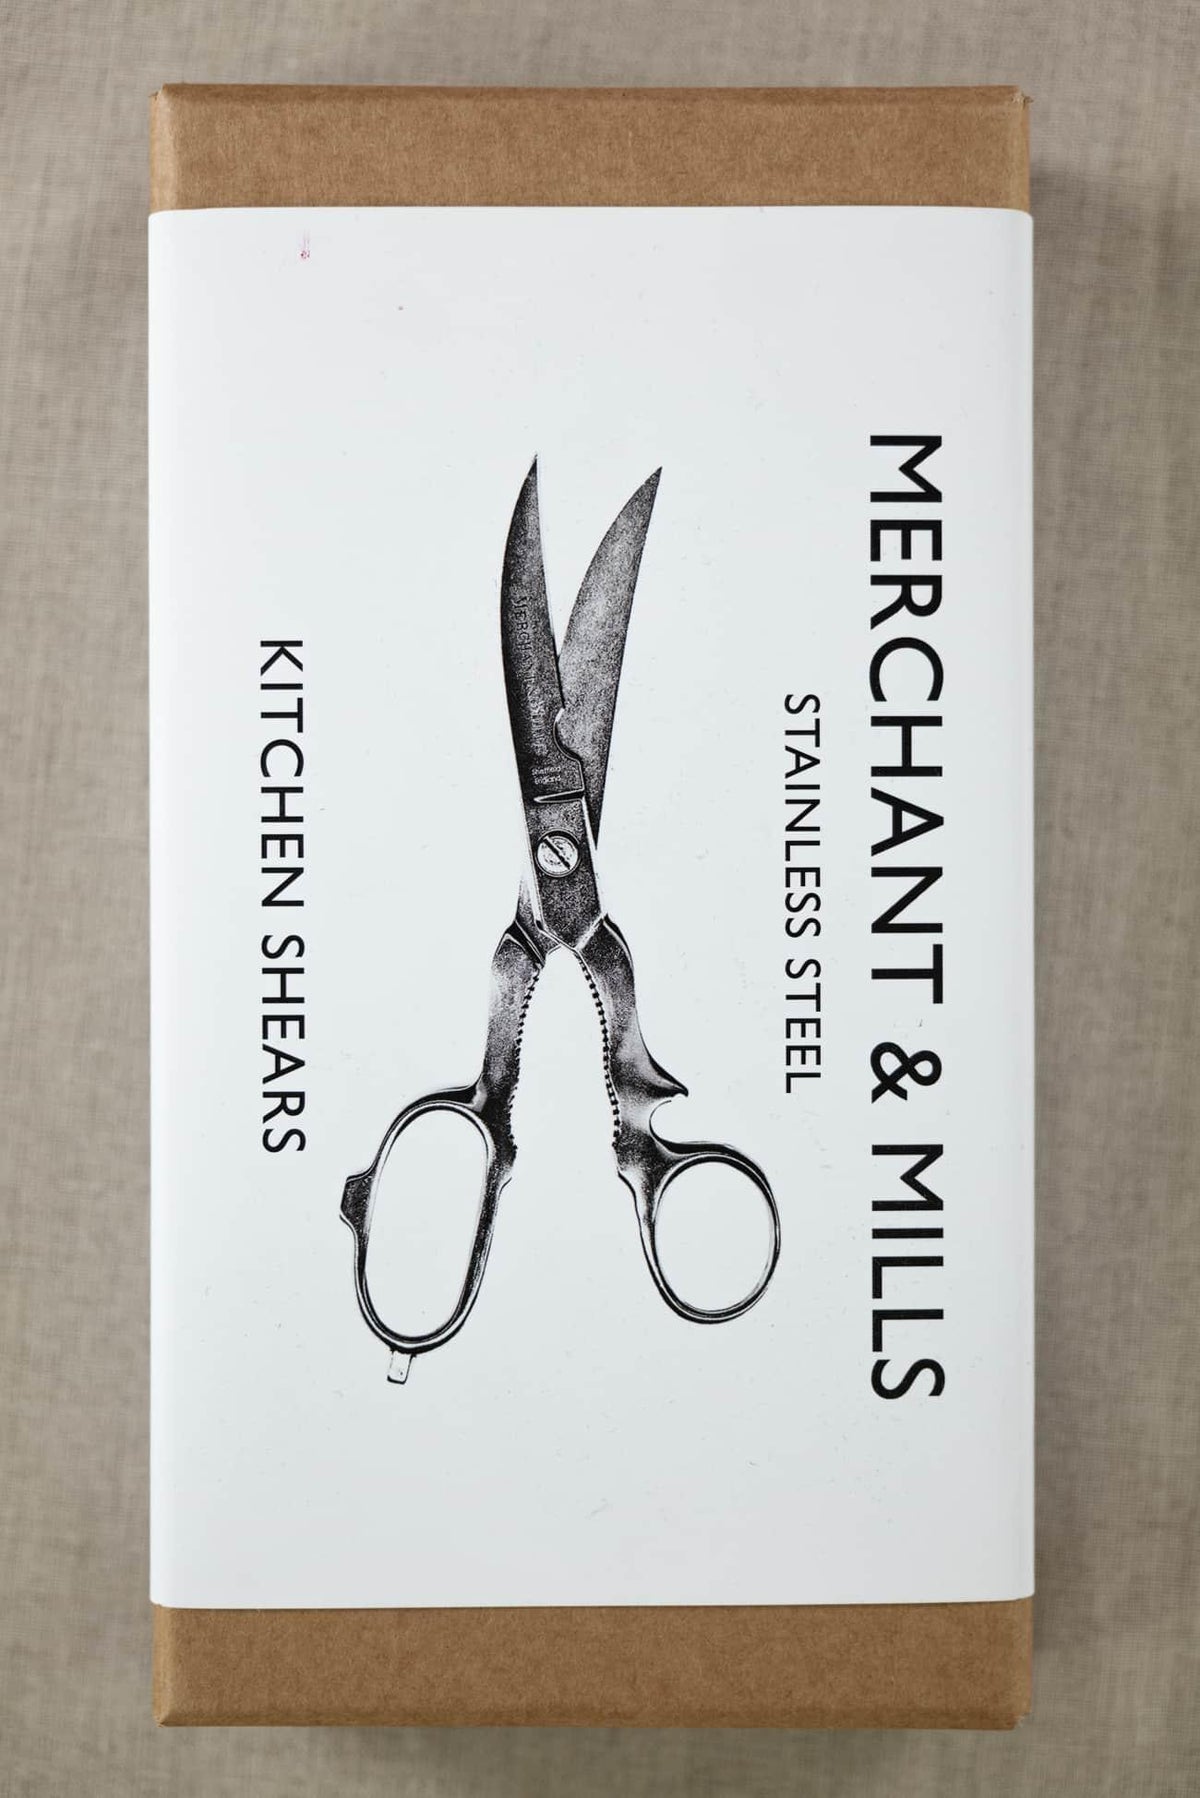 Stainless Steel Kitchen 8.5" Scissors - Marcy Tilton Fabrics